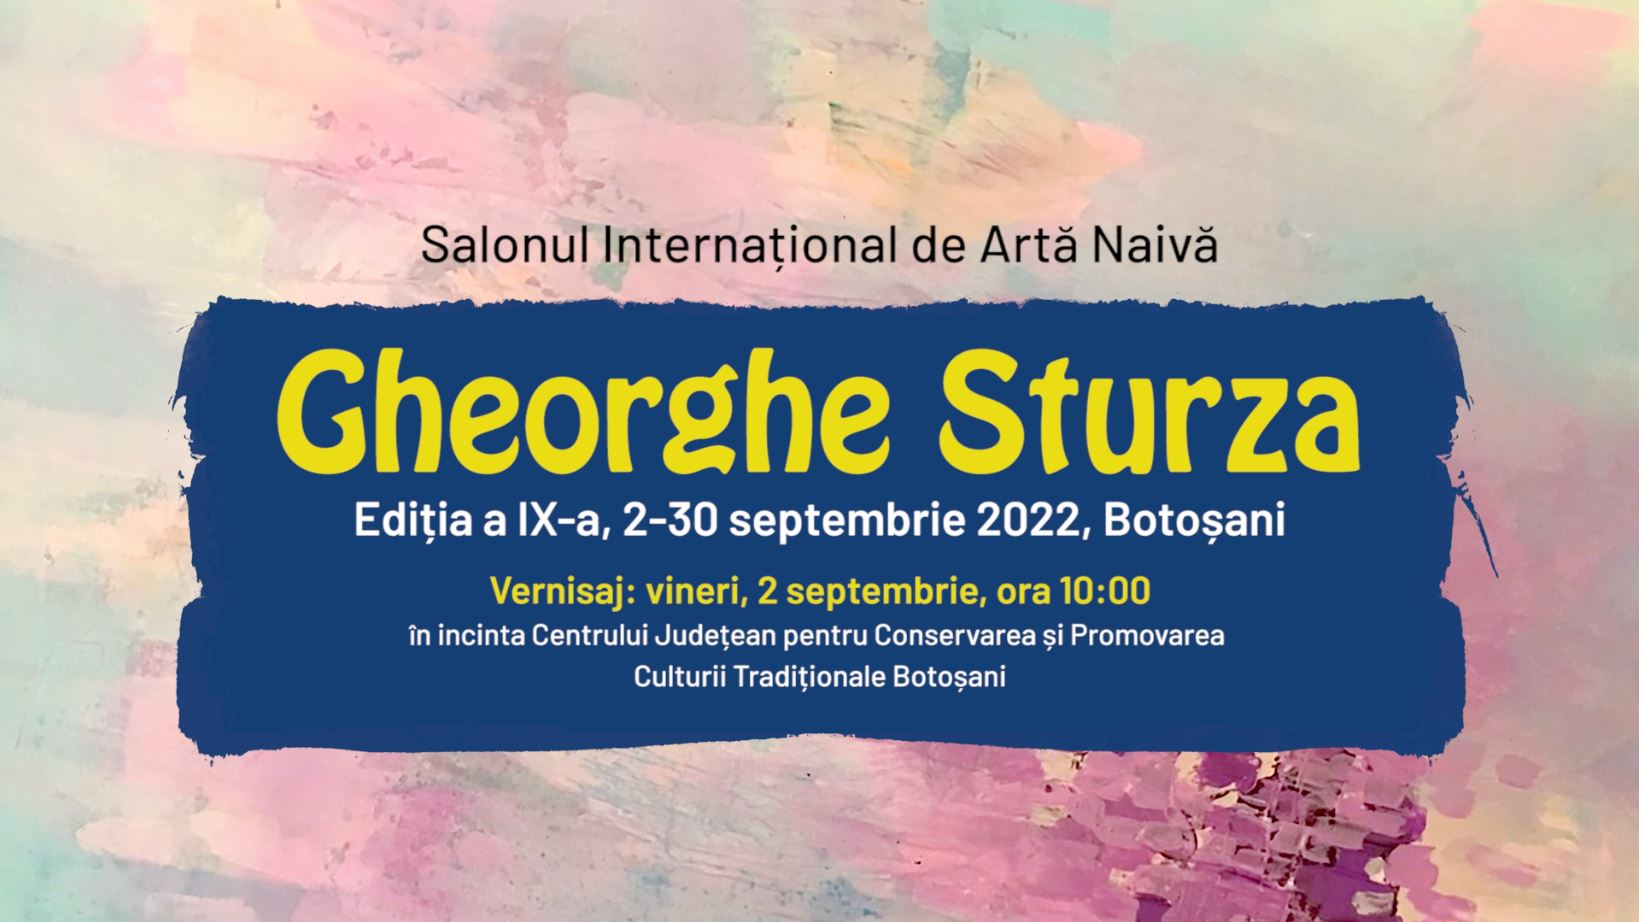 Salonul Internațional de Artă Naivă „Gheorghe Sturza”, 2-30 septembrie 2022